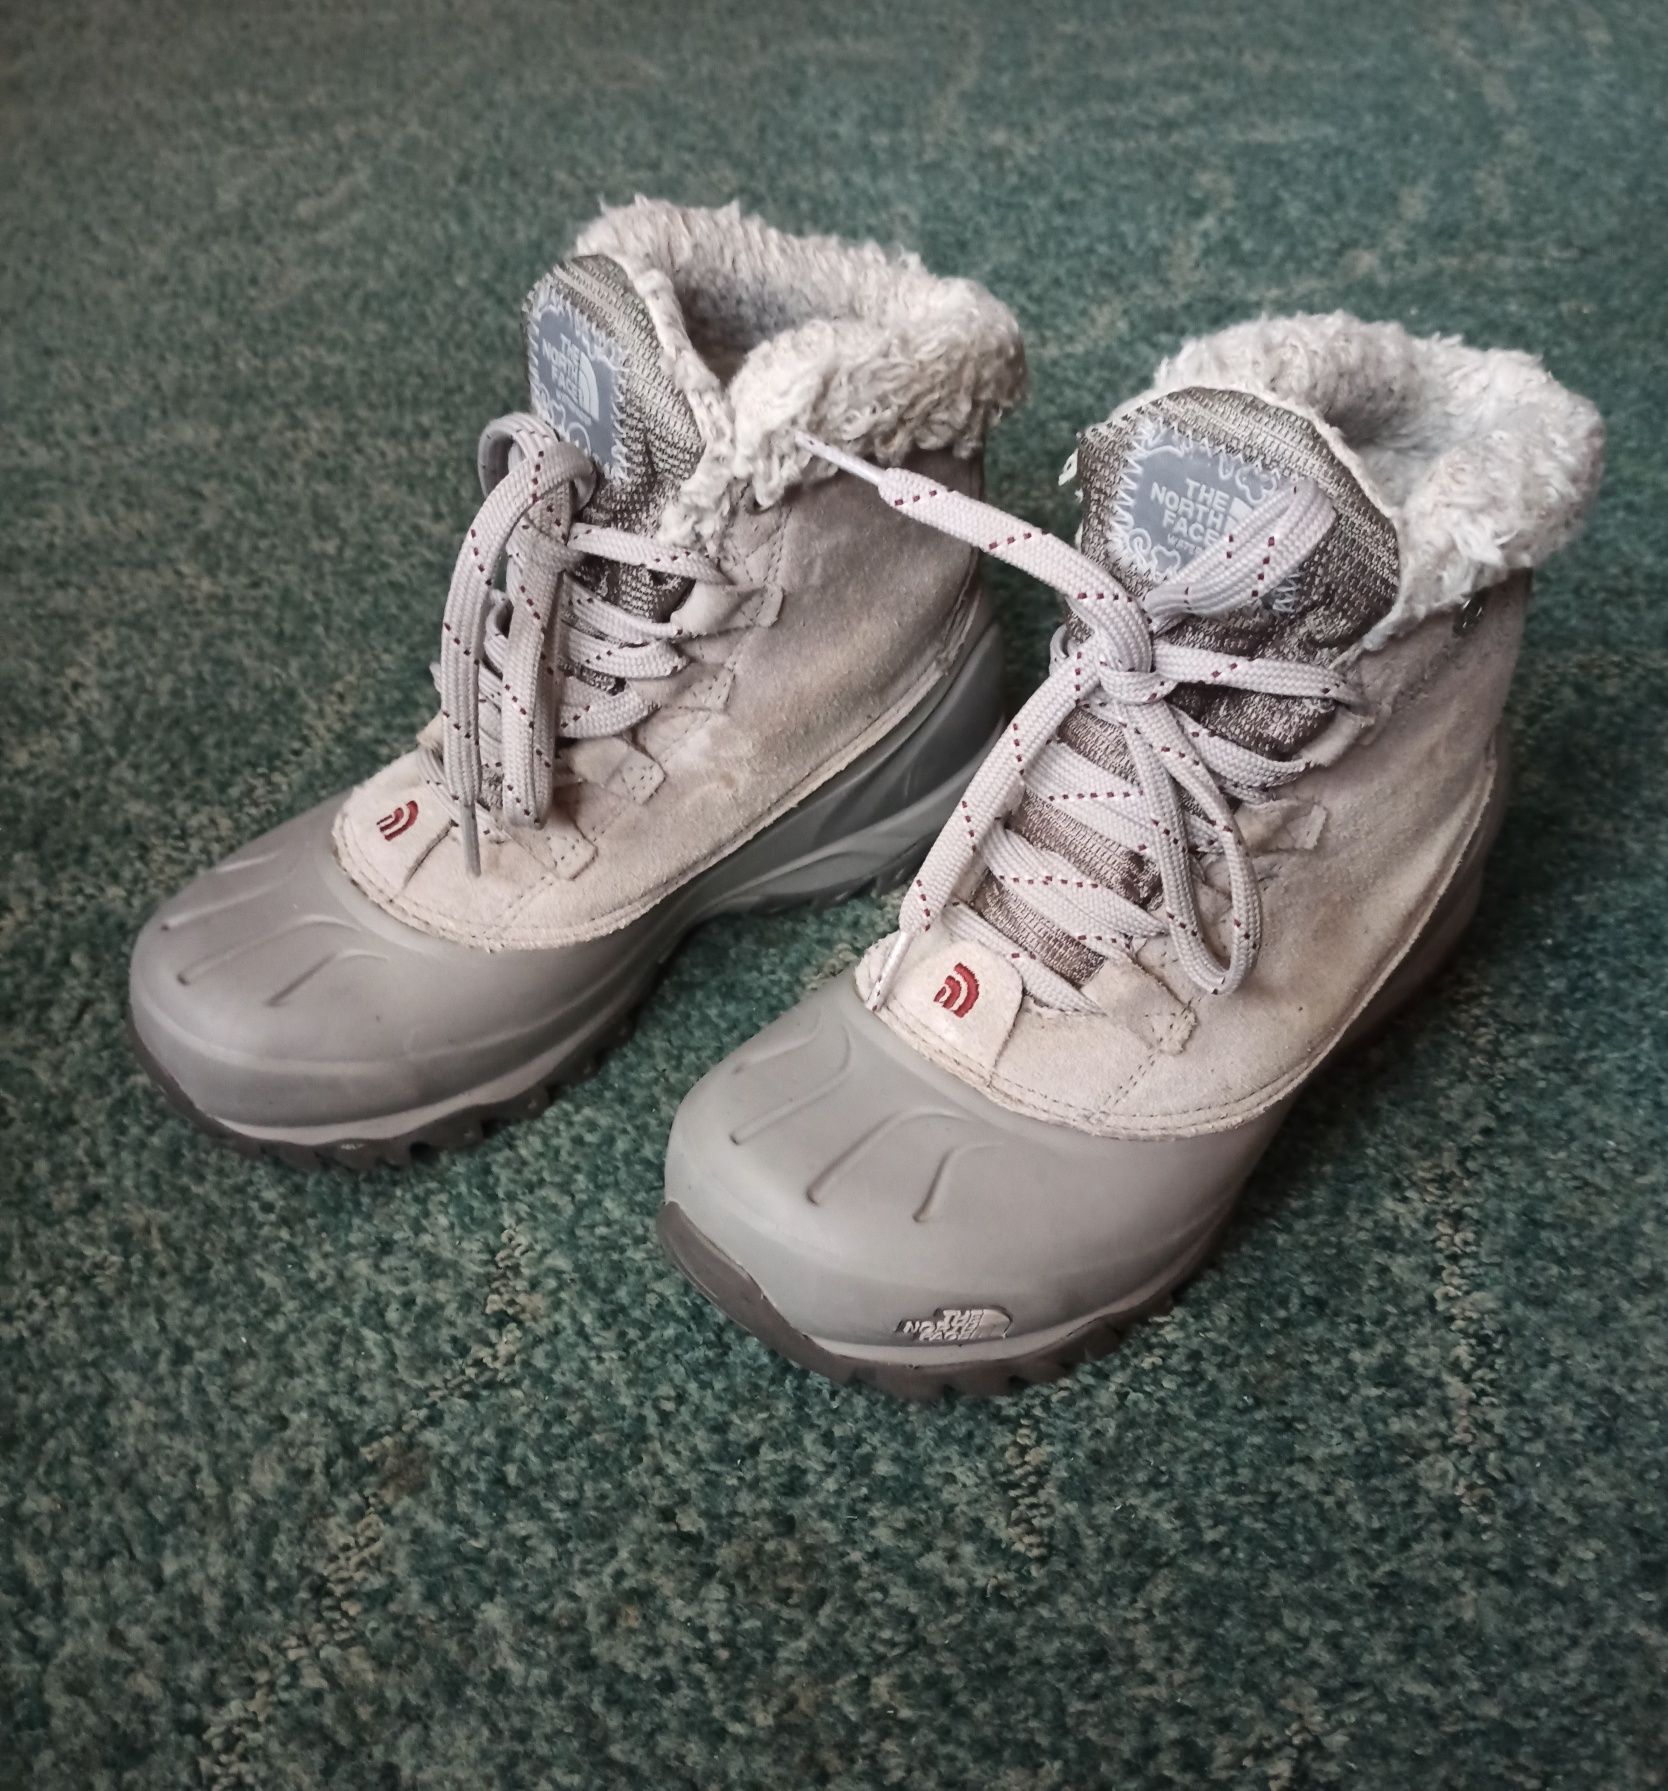 Сапоги ботинки The North Face Chilkat.Оригинал